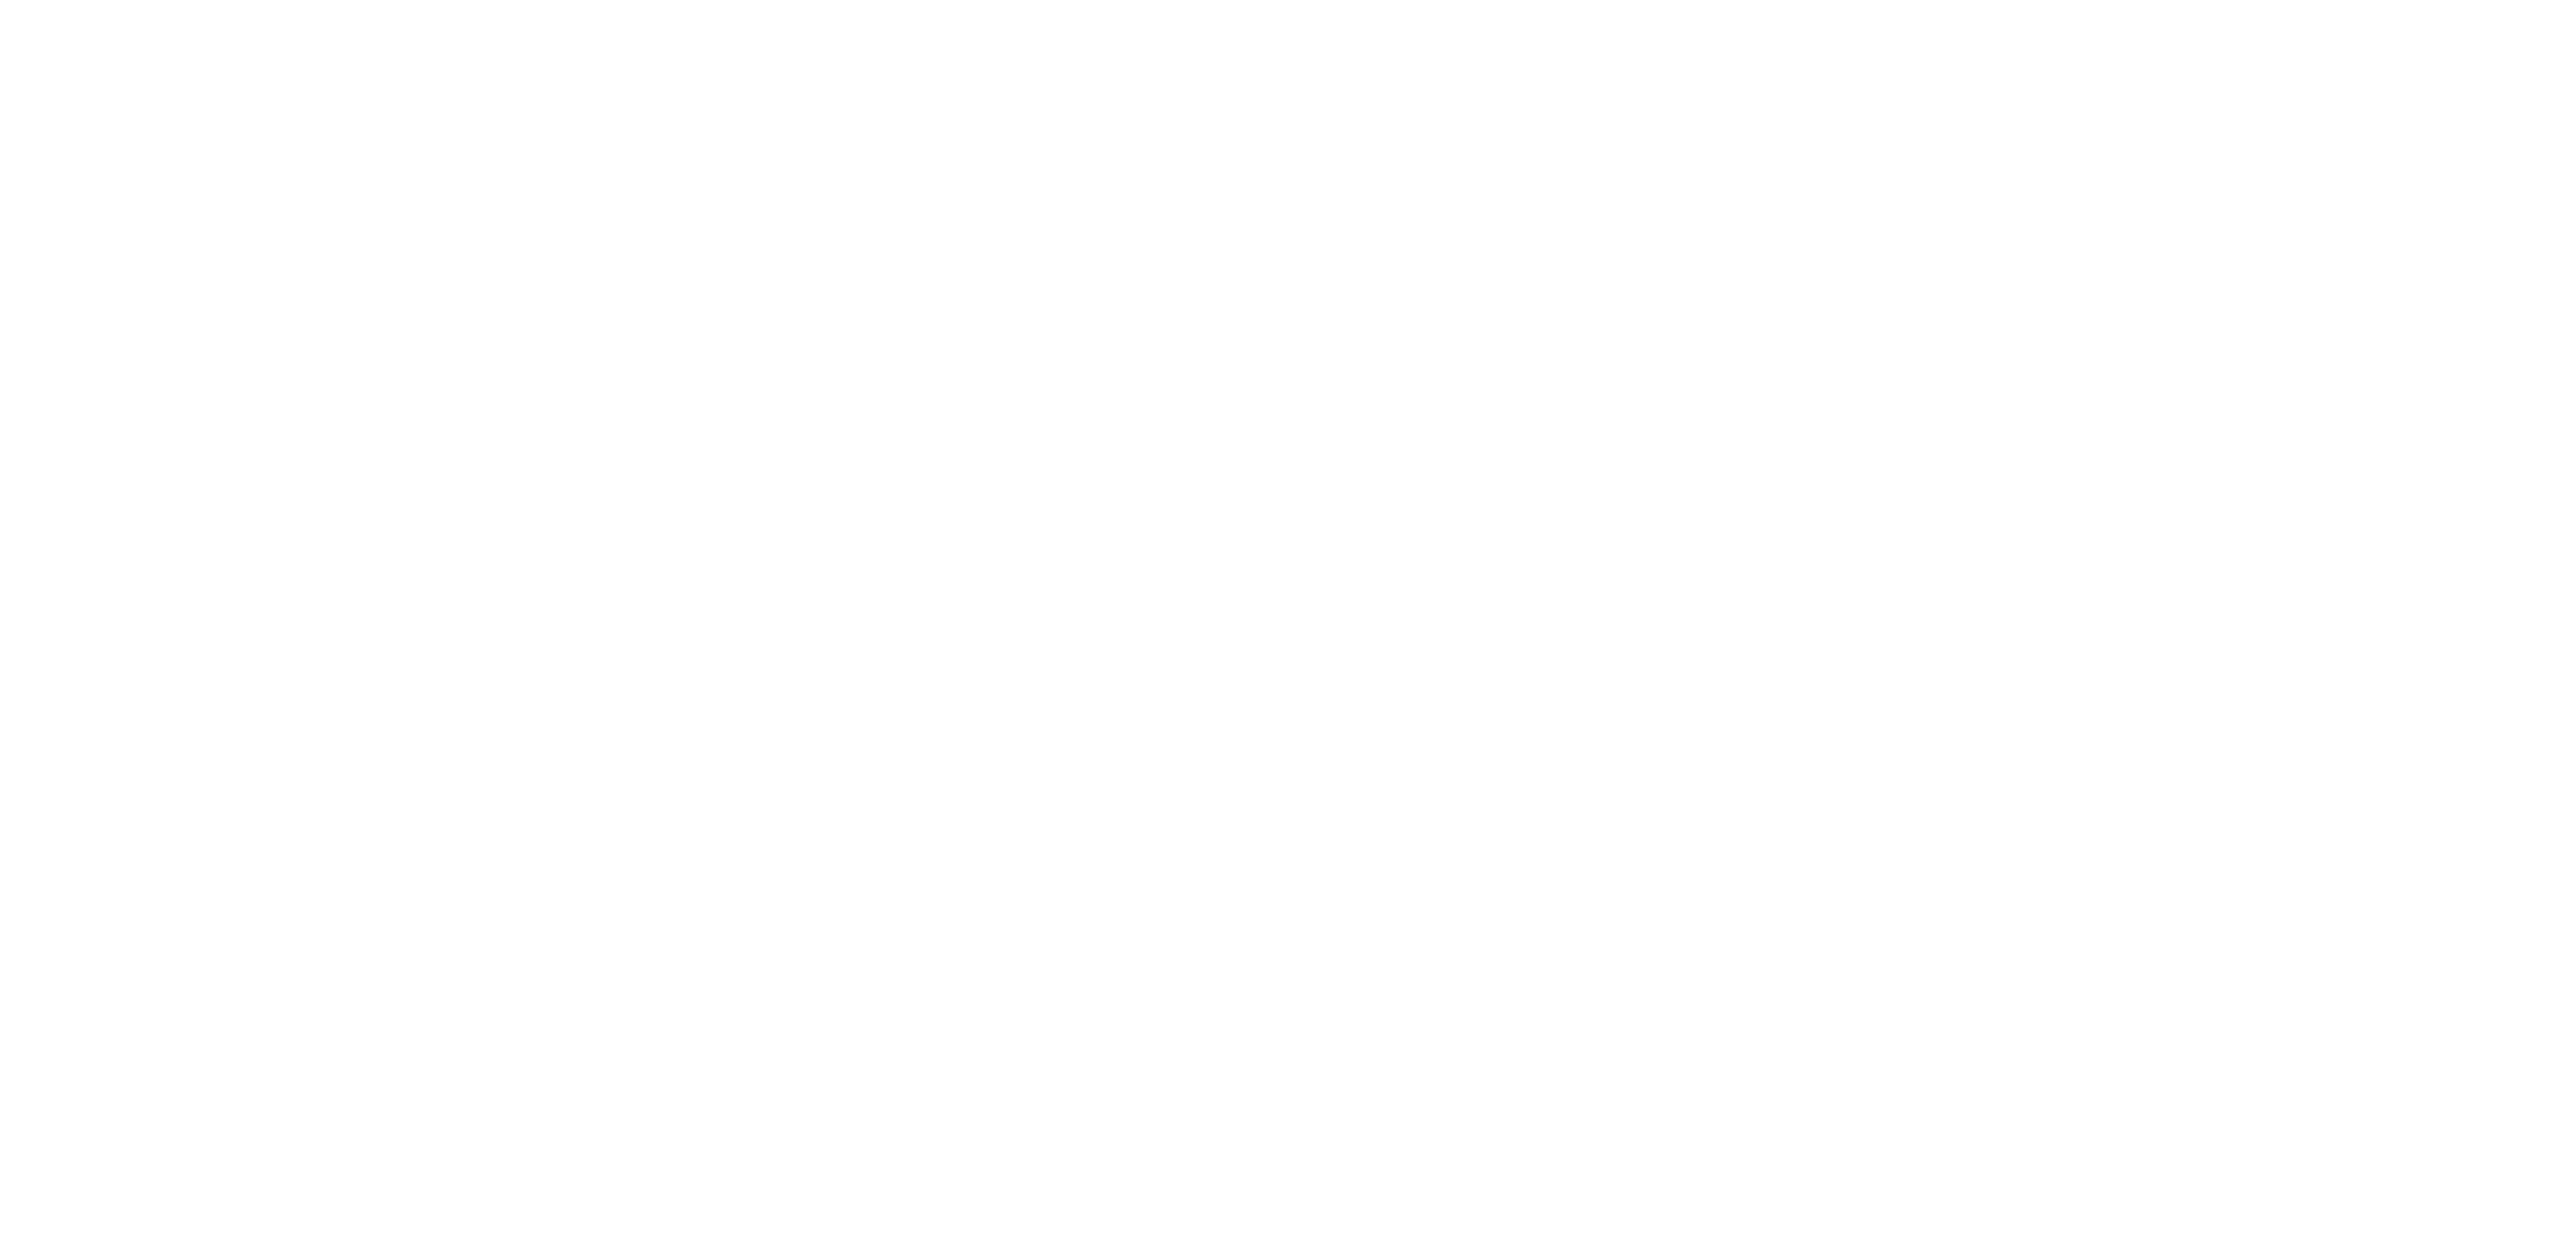 Mobile App logo - 2022 - for web-01